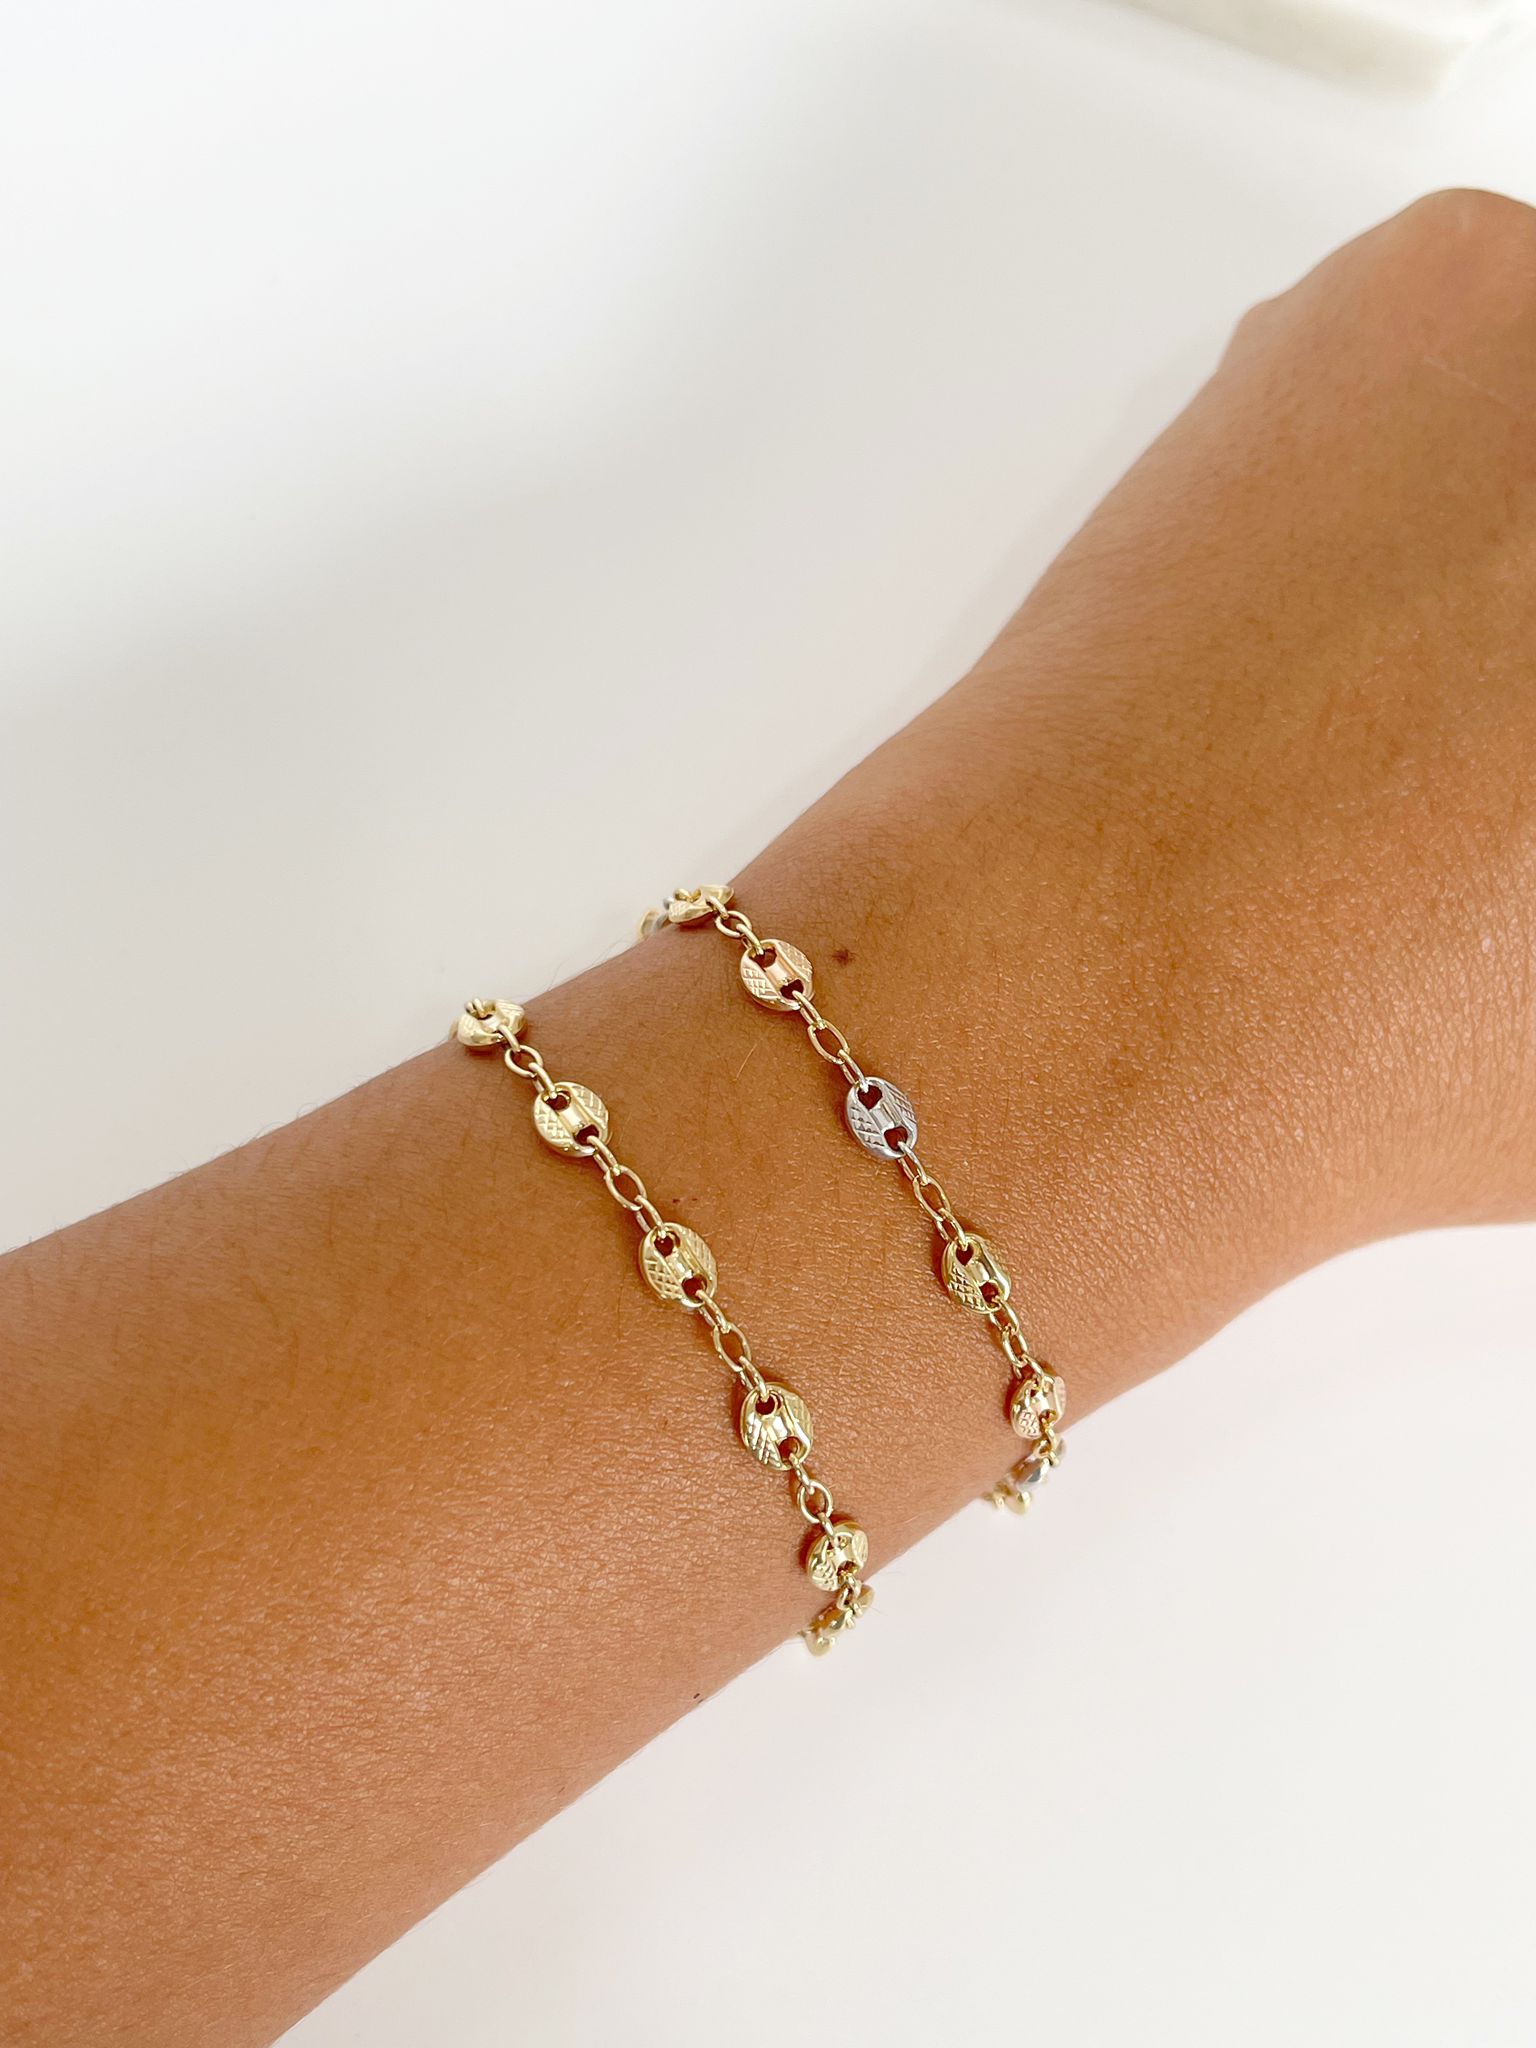 Ana gold bracelet